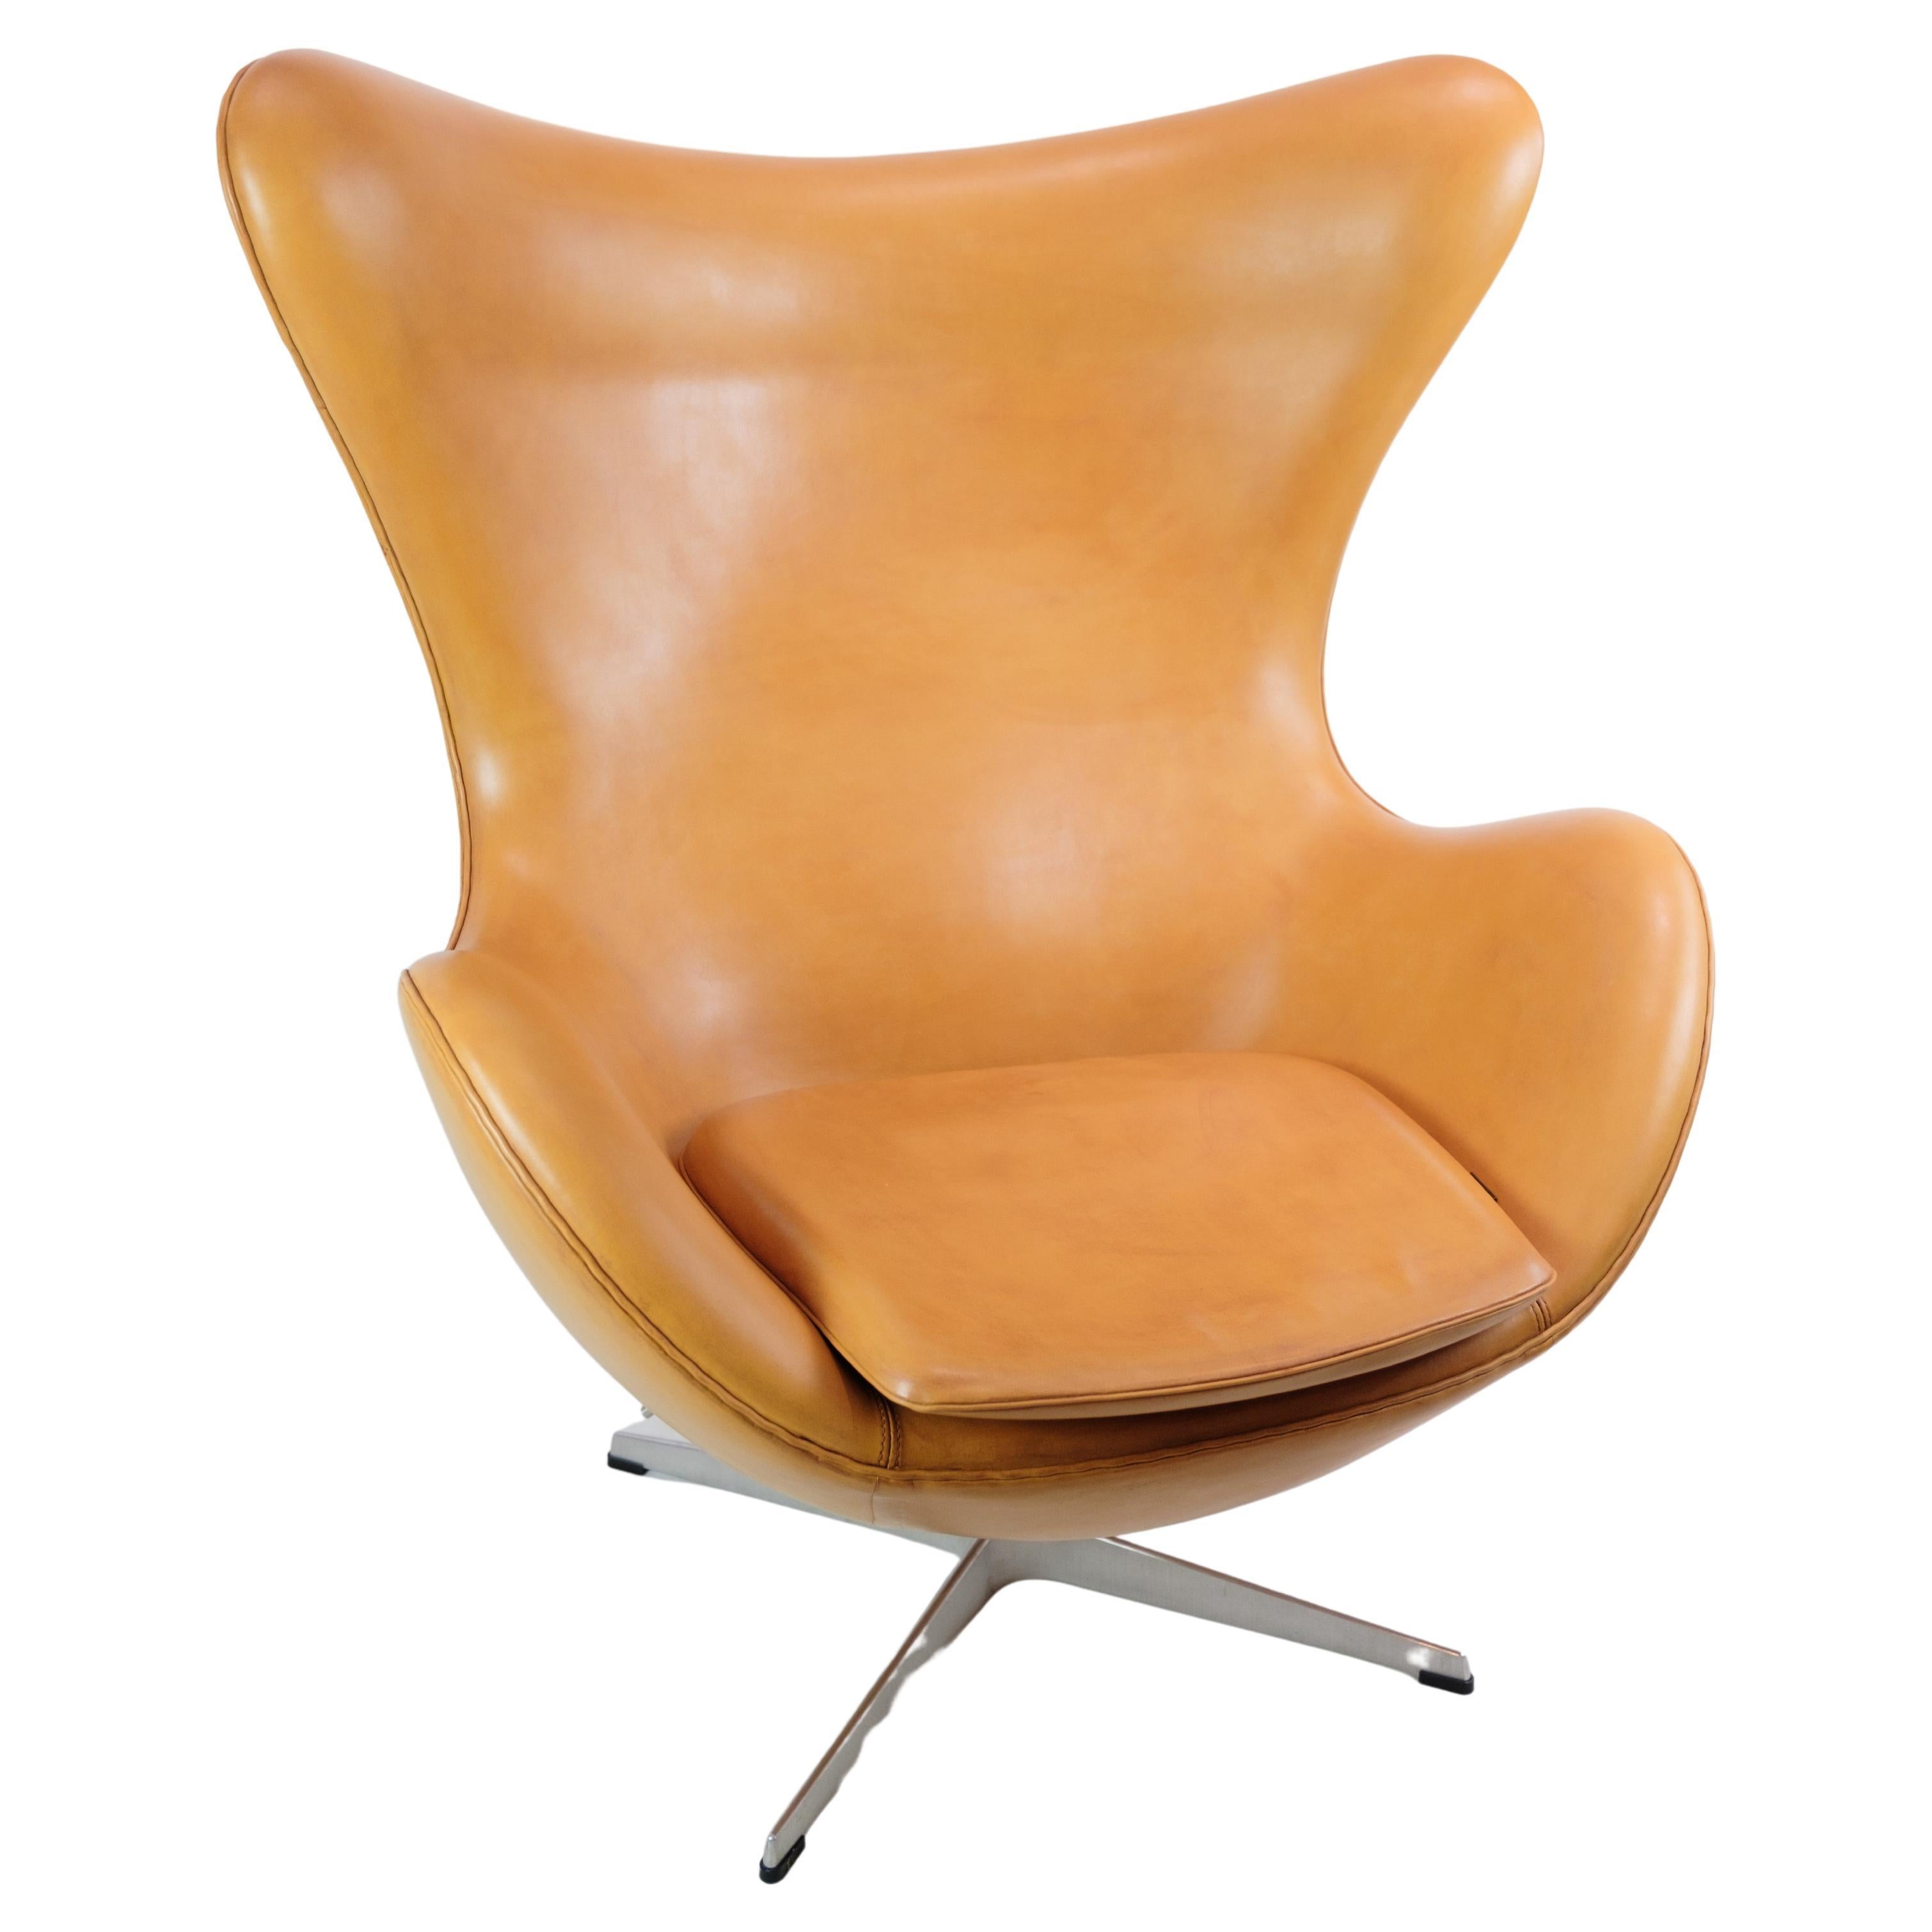 Das Ei, Modell 3316, entworfen von Arne Jacobsen im Jahr 1958. Der Stuhl hat eine originale Polsterung aus cognacfarbenem Elegance-Leder, hergestellt von Fritz Hansen. 

Dieses Produkt wird in unserer Fachwerkstatt von unseren geschulten